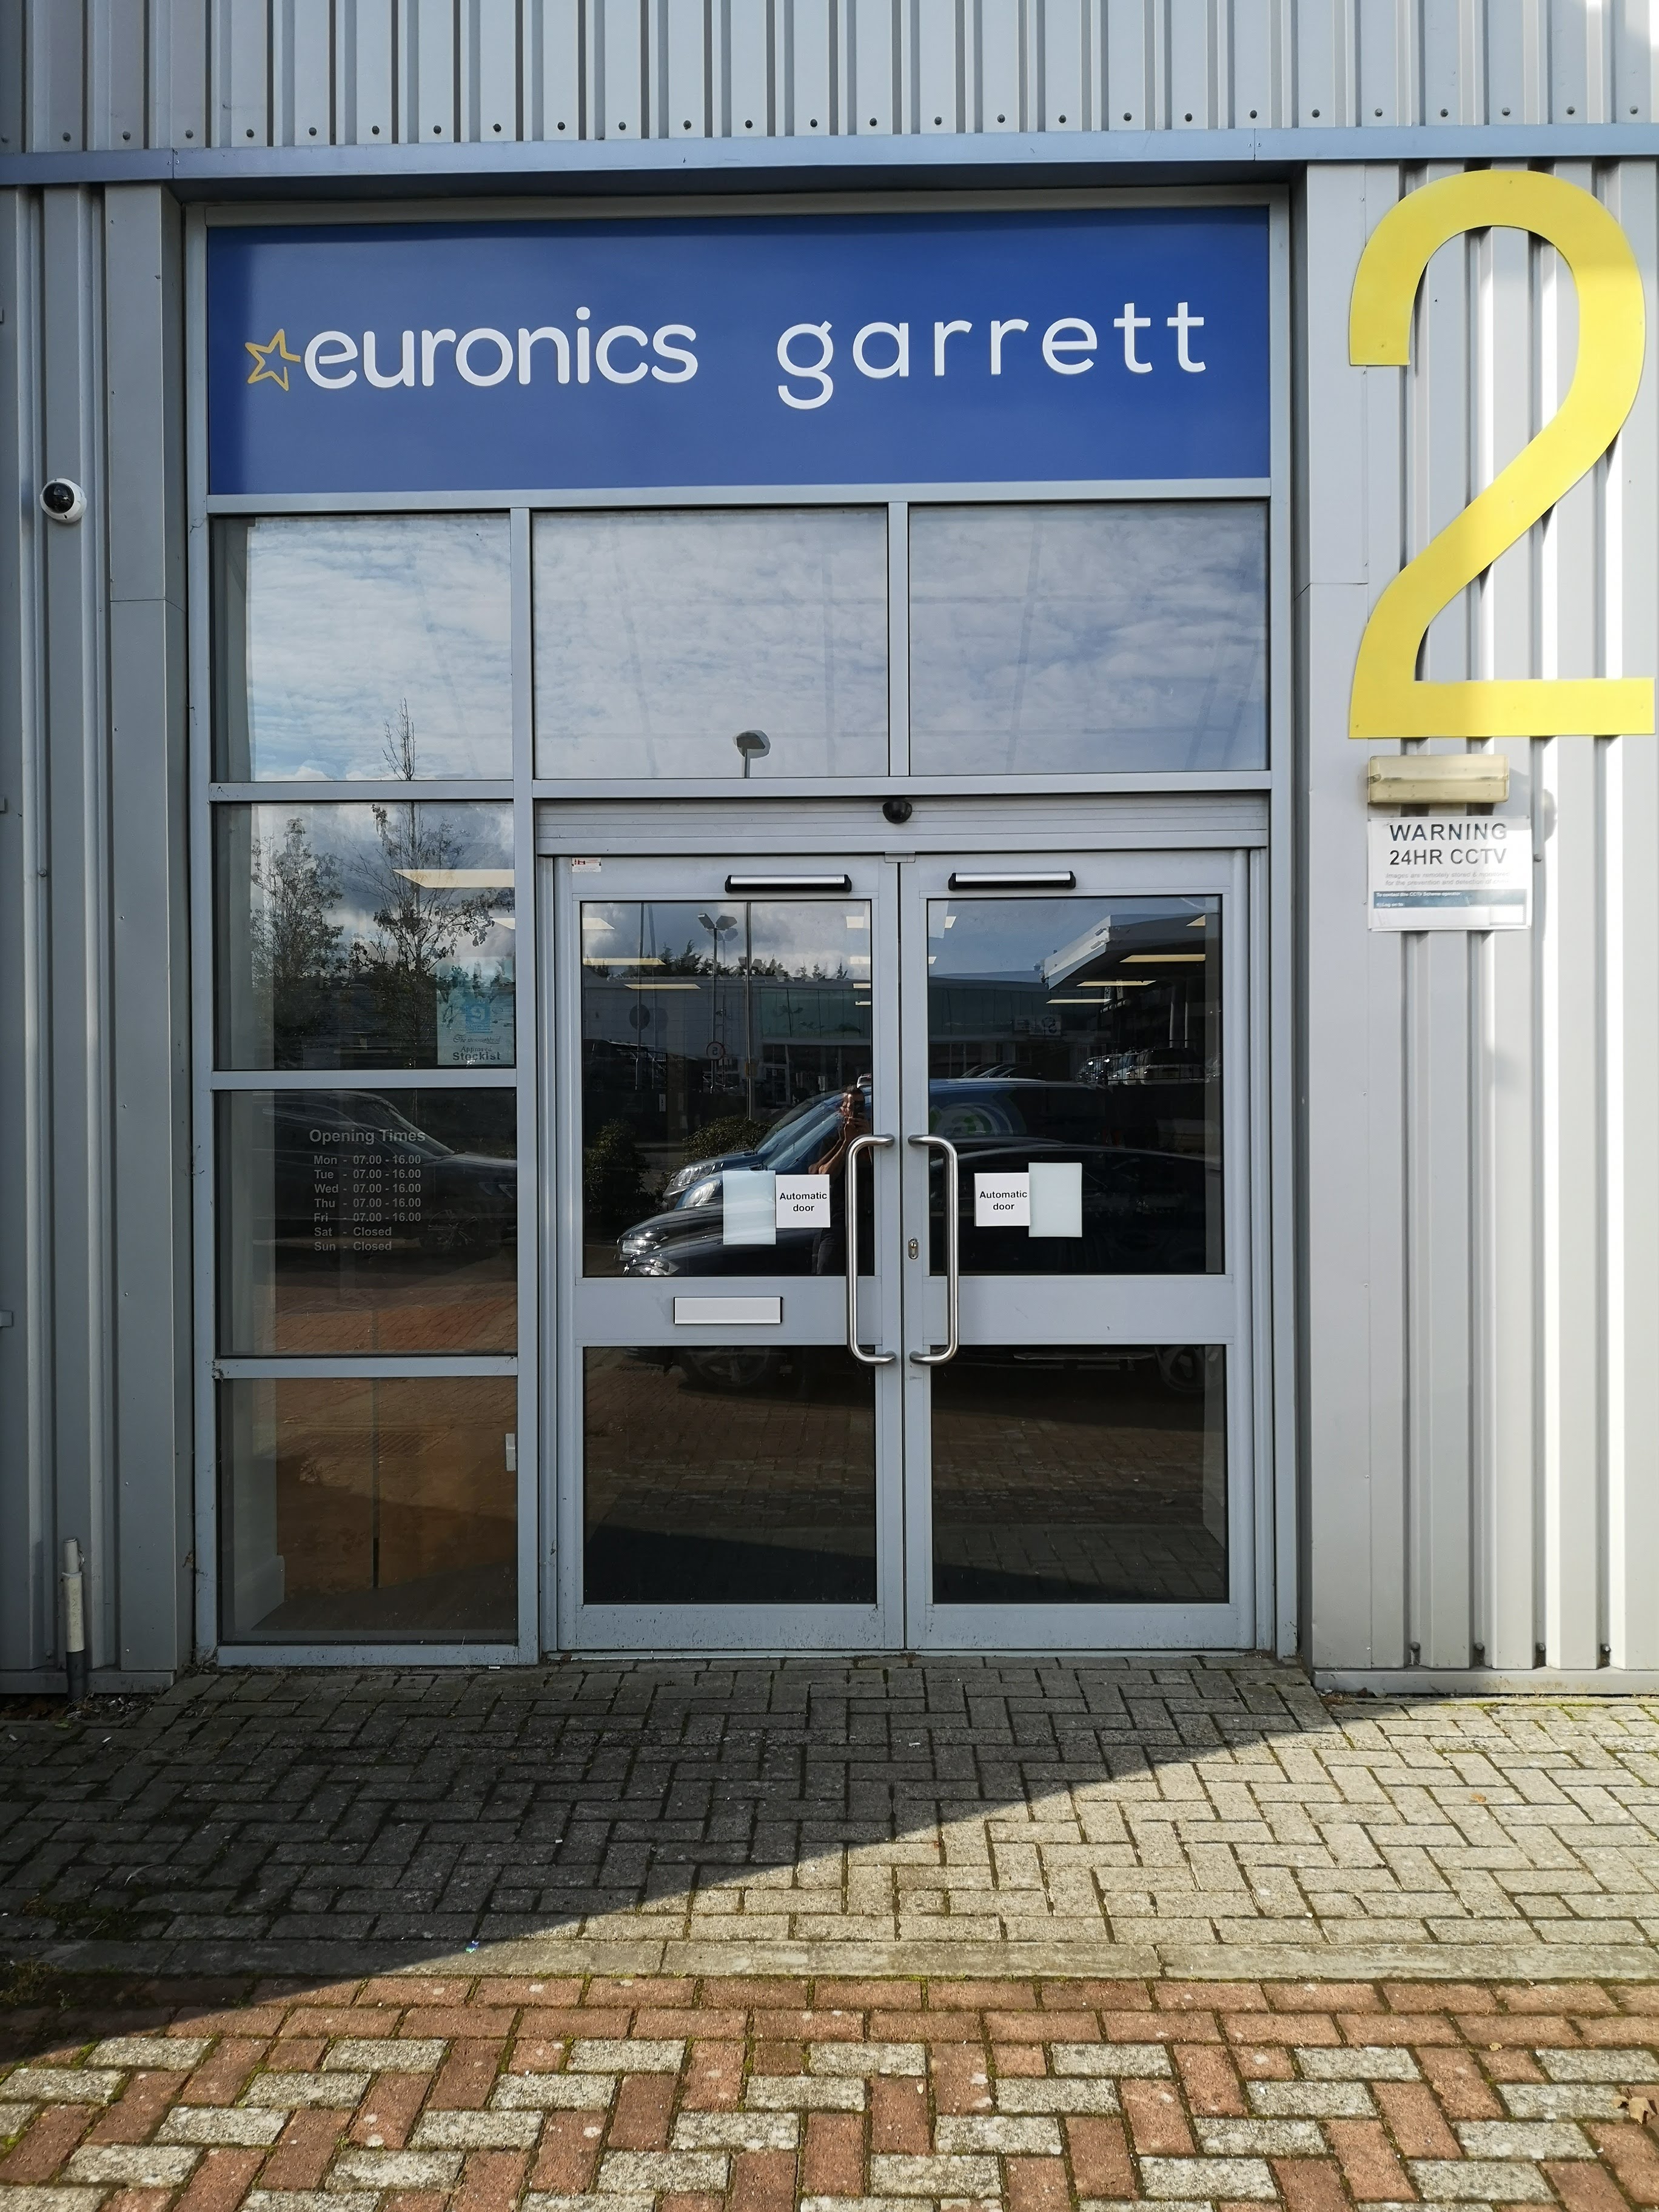 Garrett Appliances Ltd